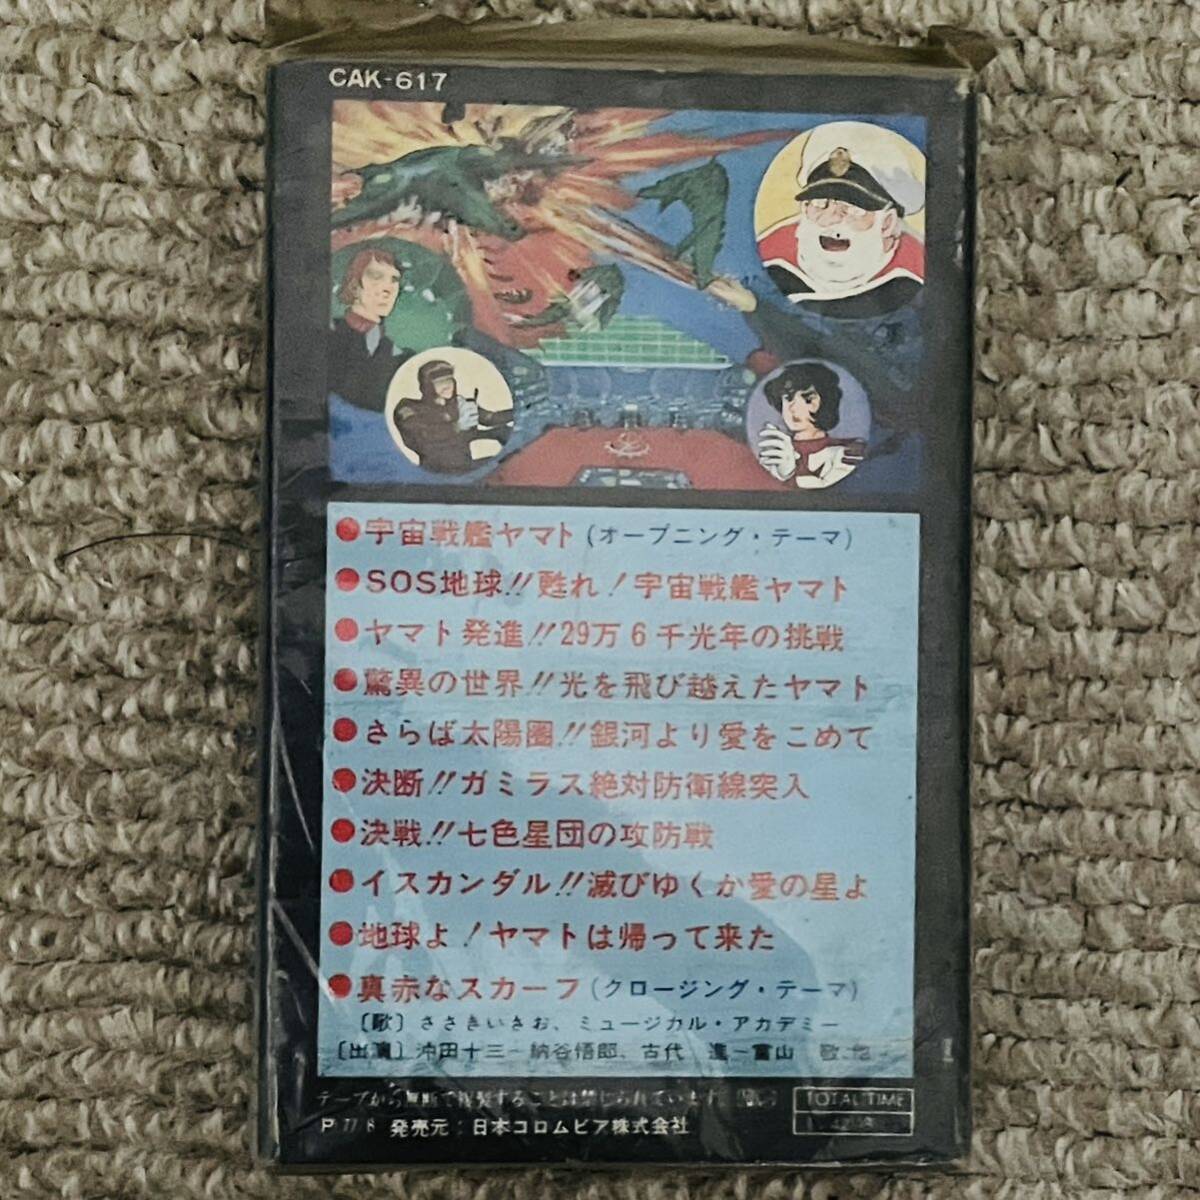 [ редкий ] Uchu Senkan Yamato саундтрек лента Uchu Senkan Yamato телевизор фильм записано в Японии кассетная лента CAK-617 с картой текстов .